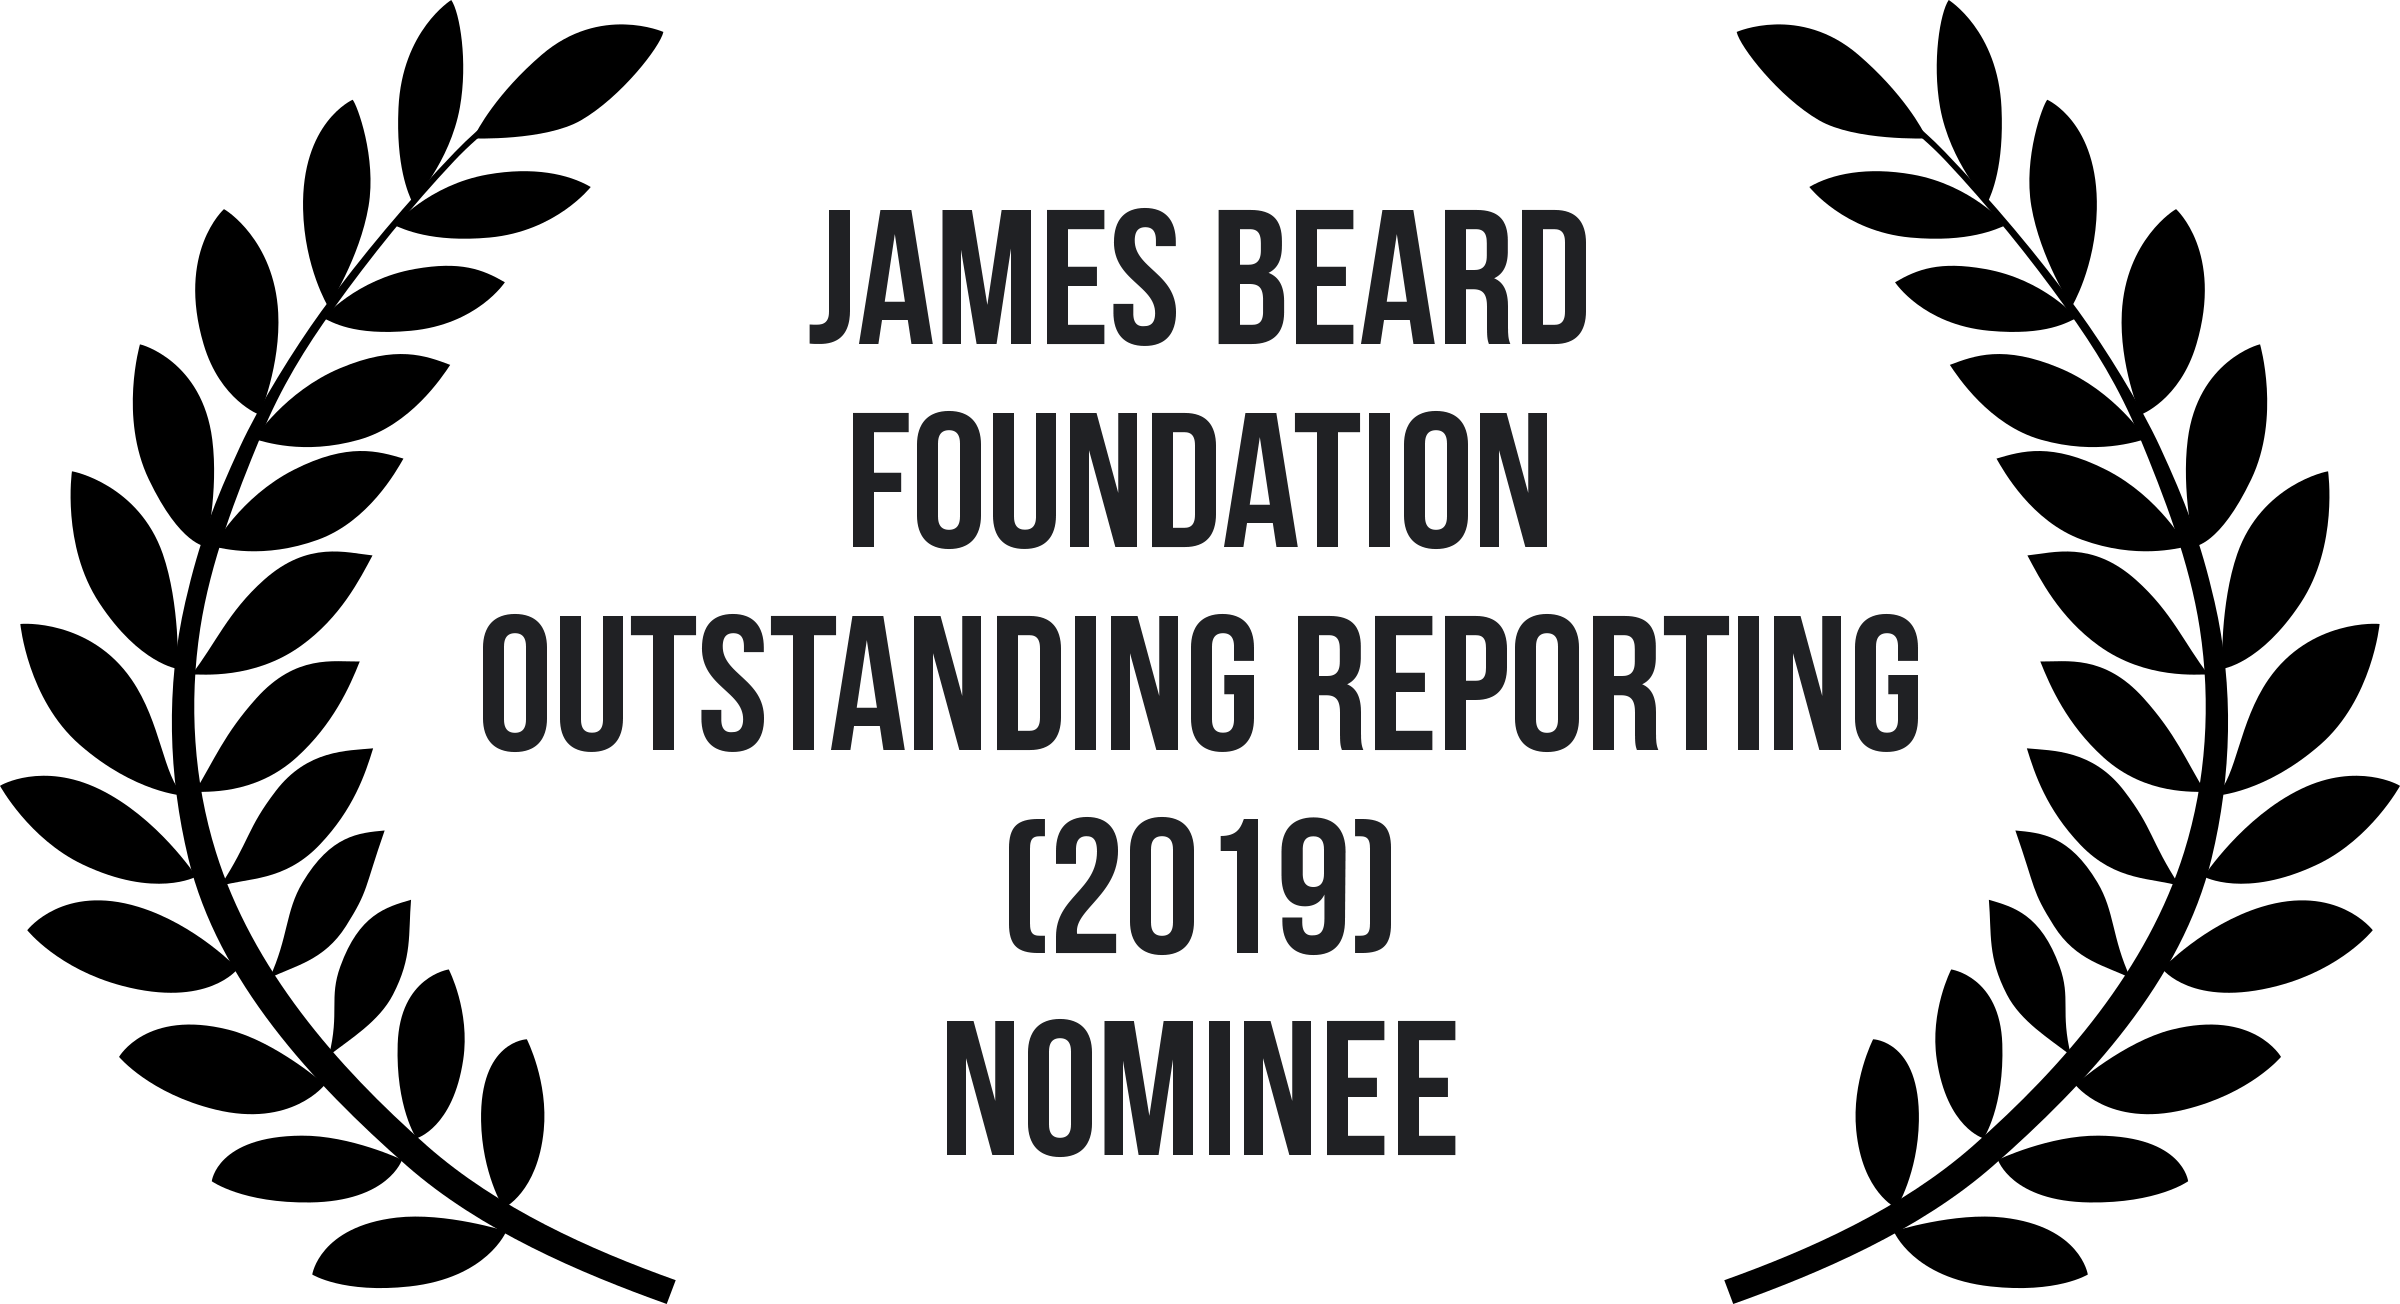 1-James Beard1.png